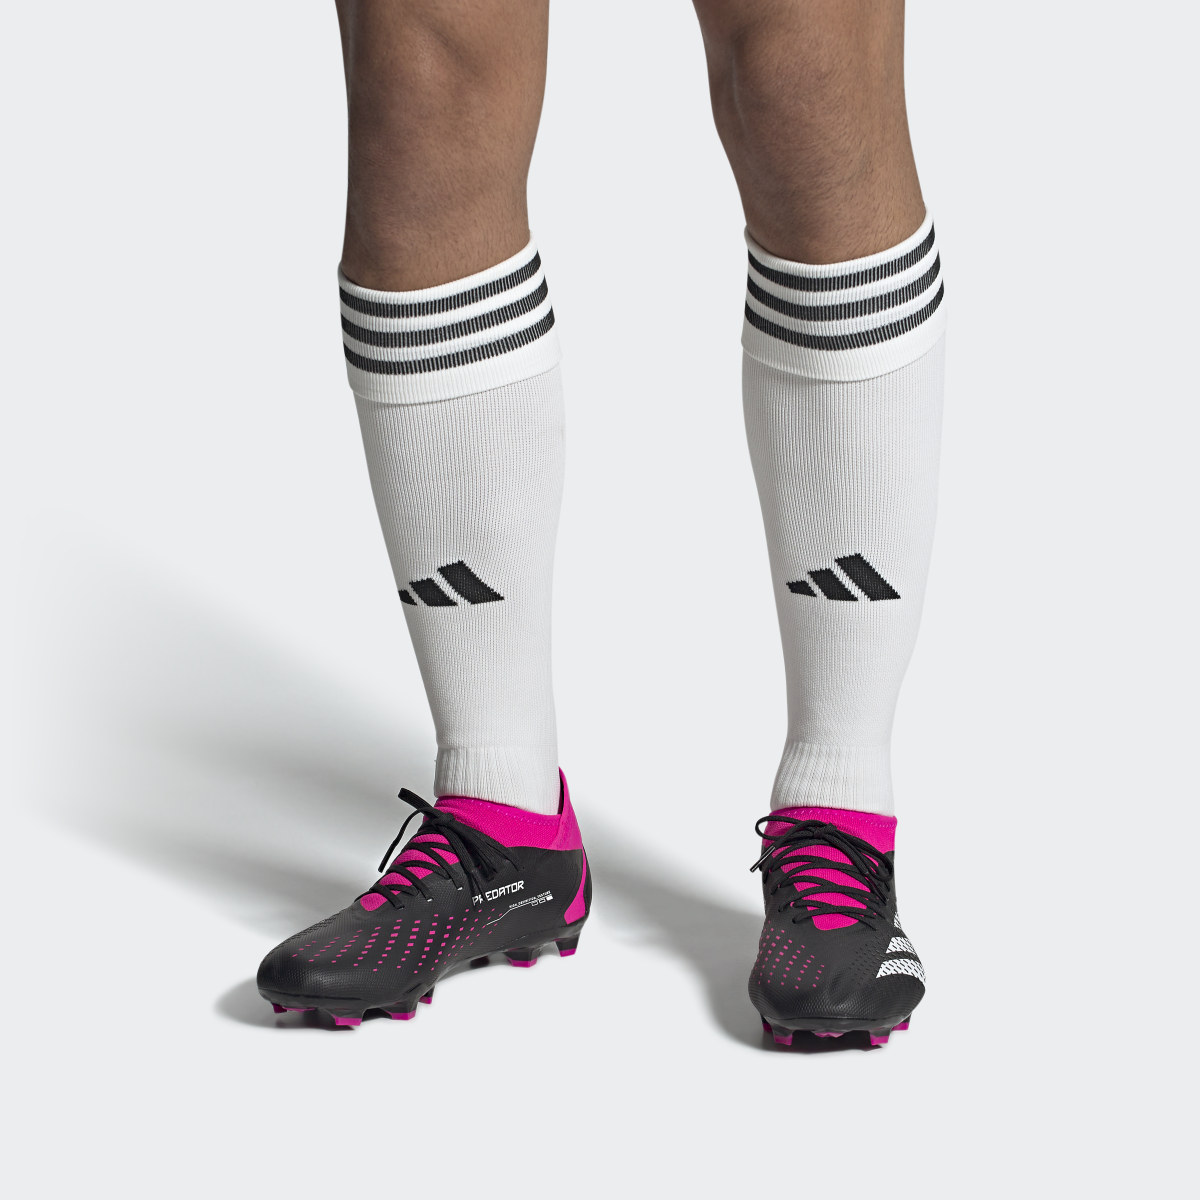 Adidas Calzado de Fútbol Predator Accuracy.3. 5